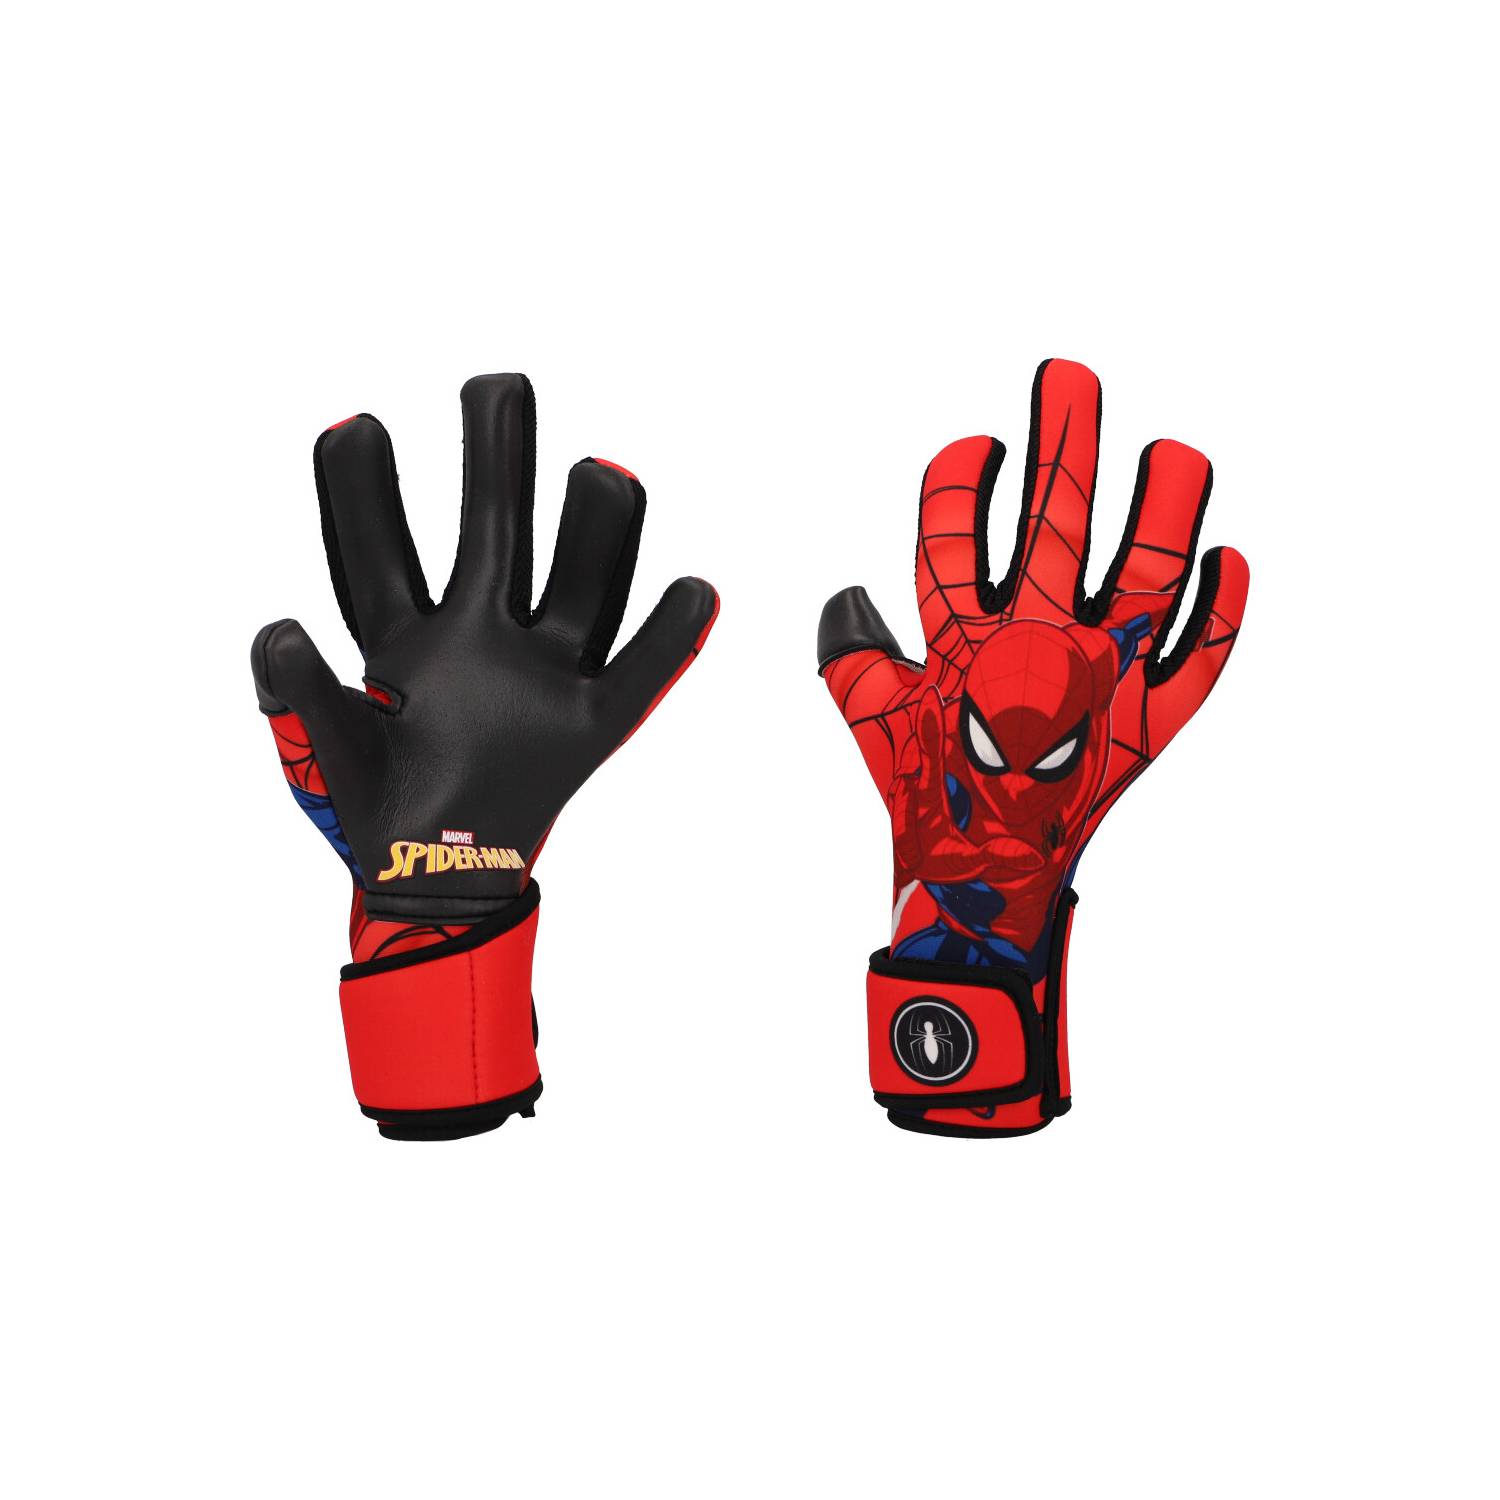 Mezclado alias ornamento Spiderman guantes niños €0.99 observatorioviolencia.pe